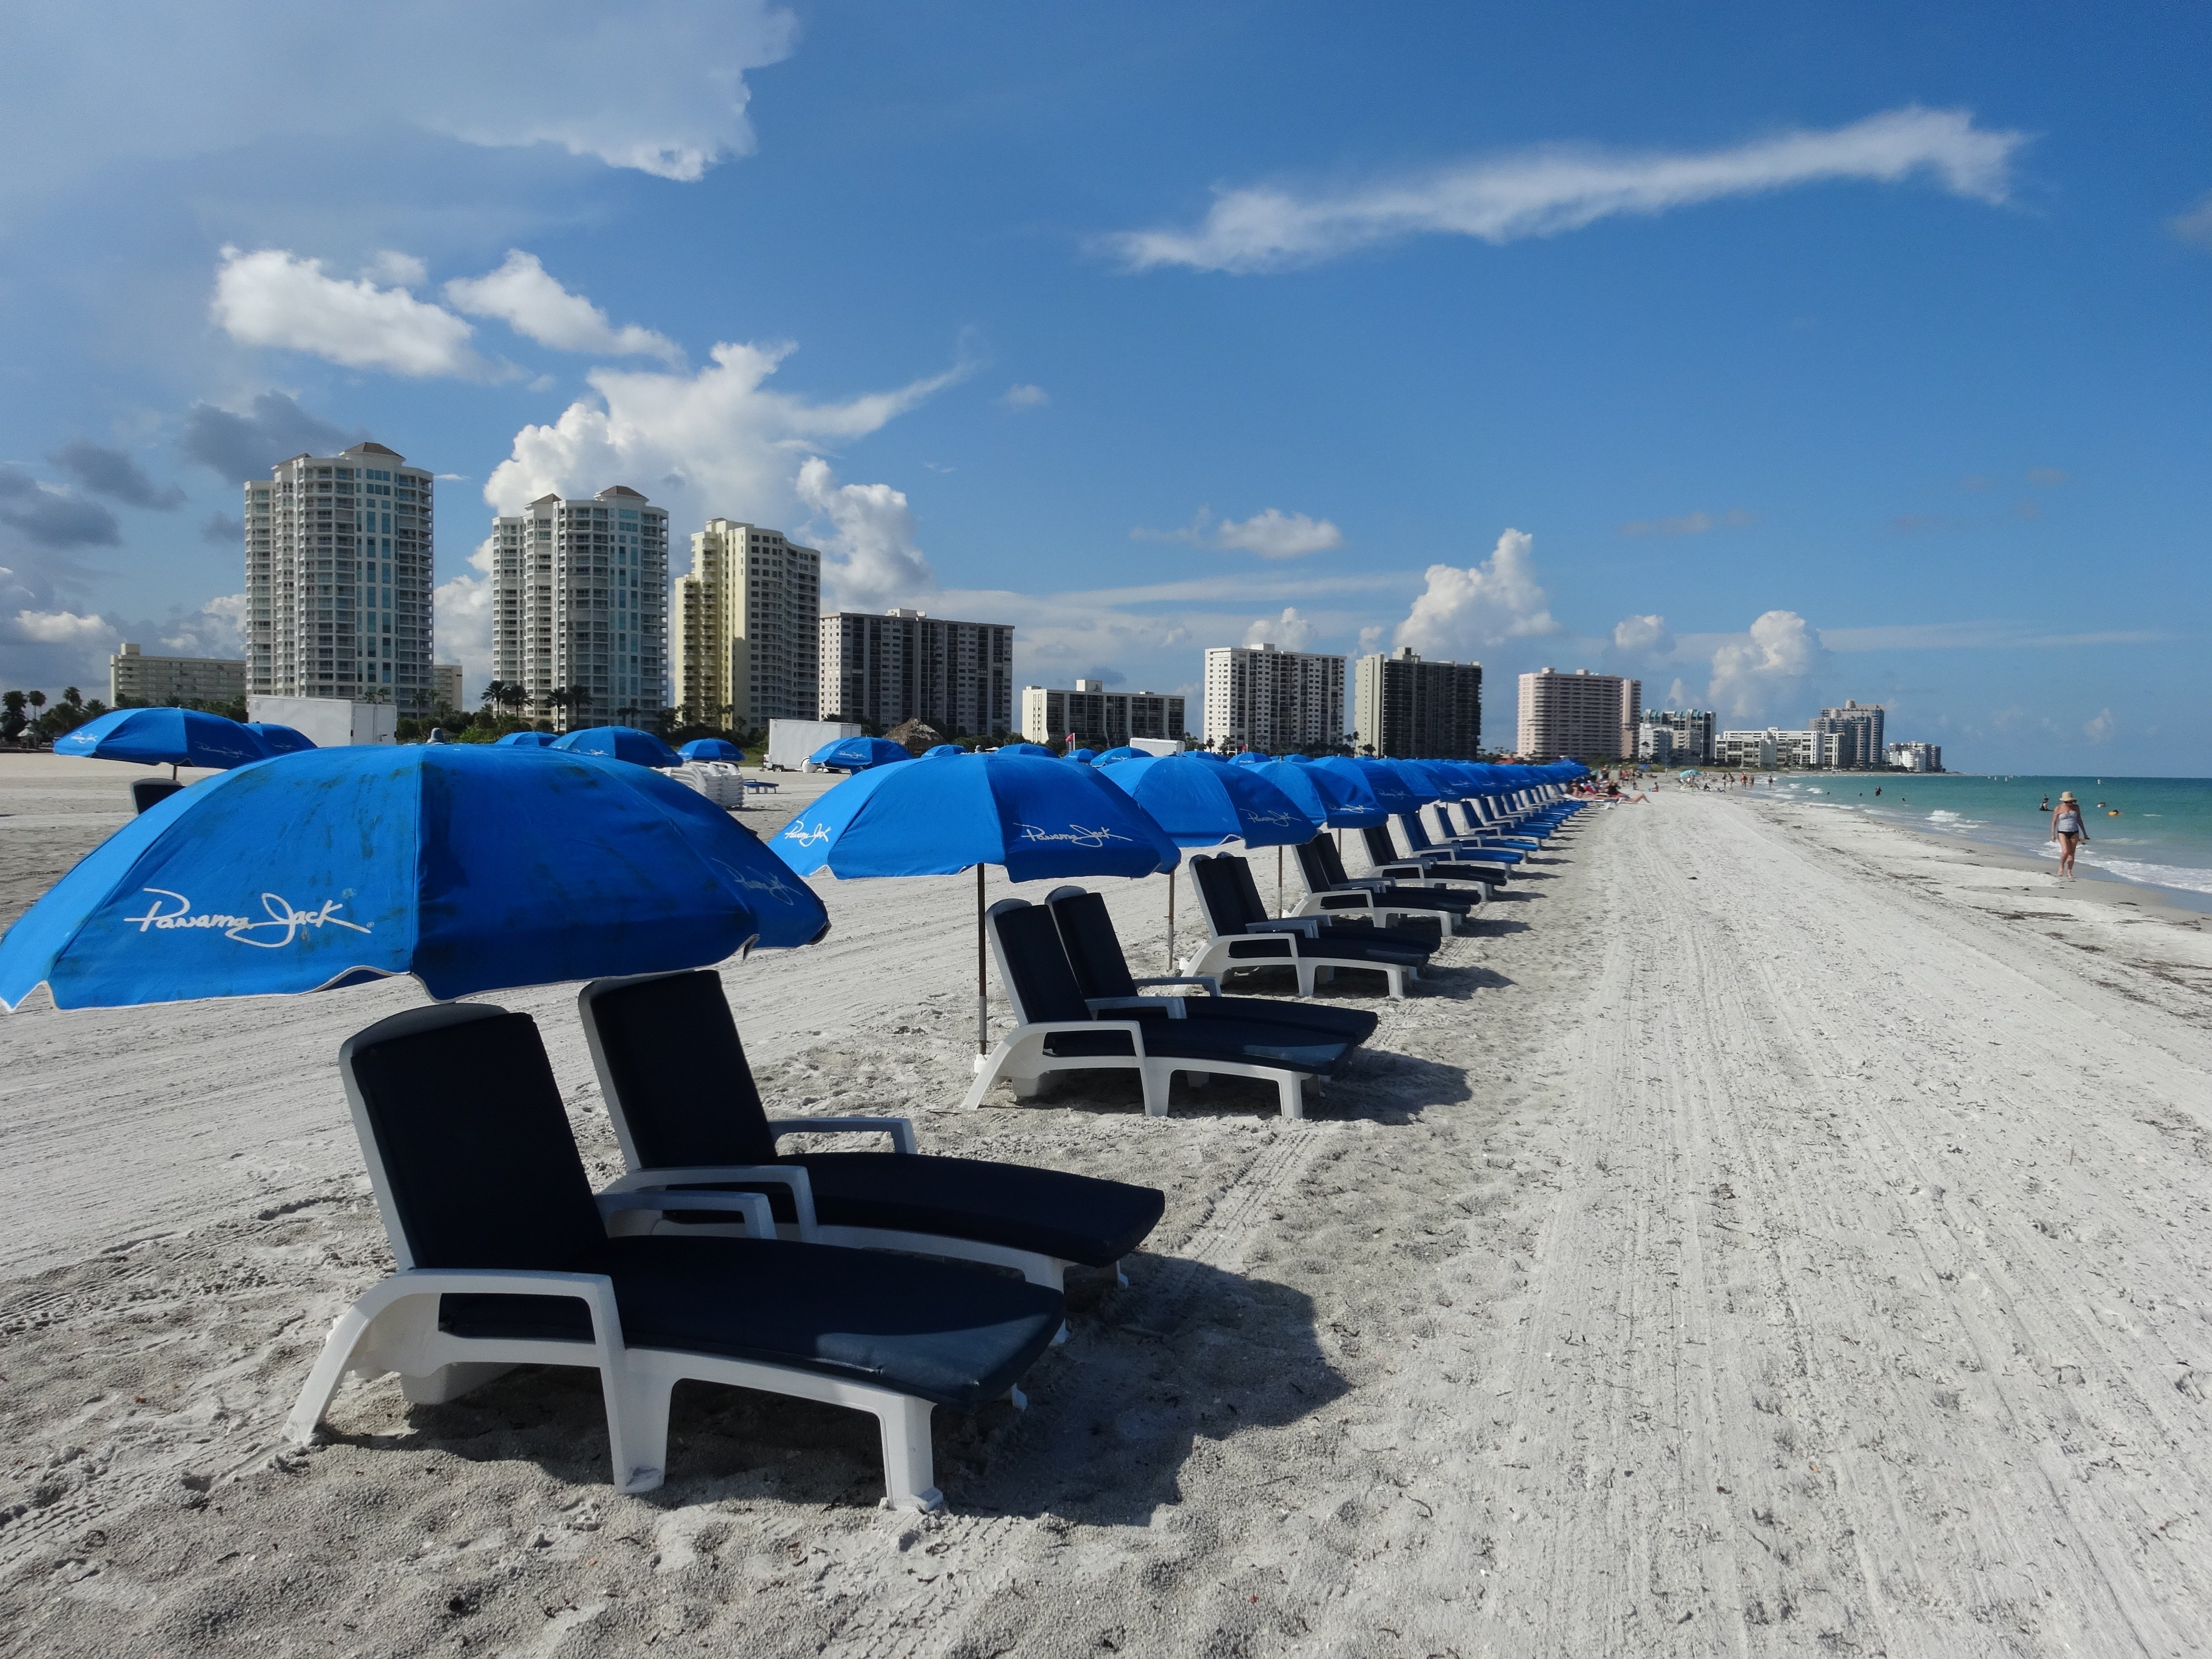 Playa de St Petersburg Clearwater en Florida, Estados Unidos